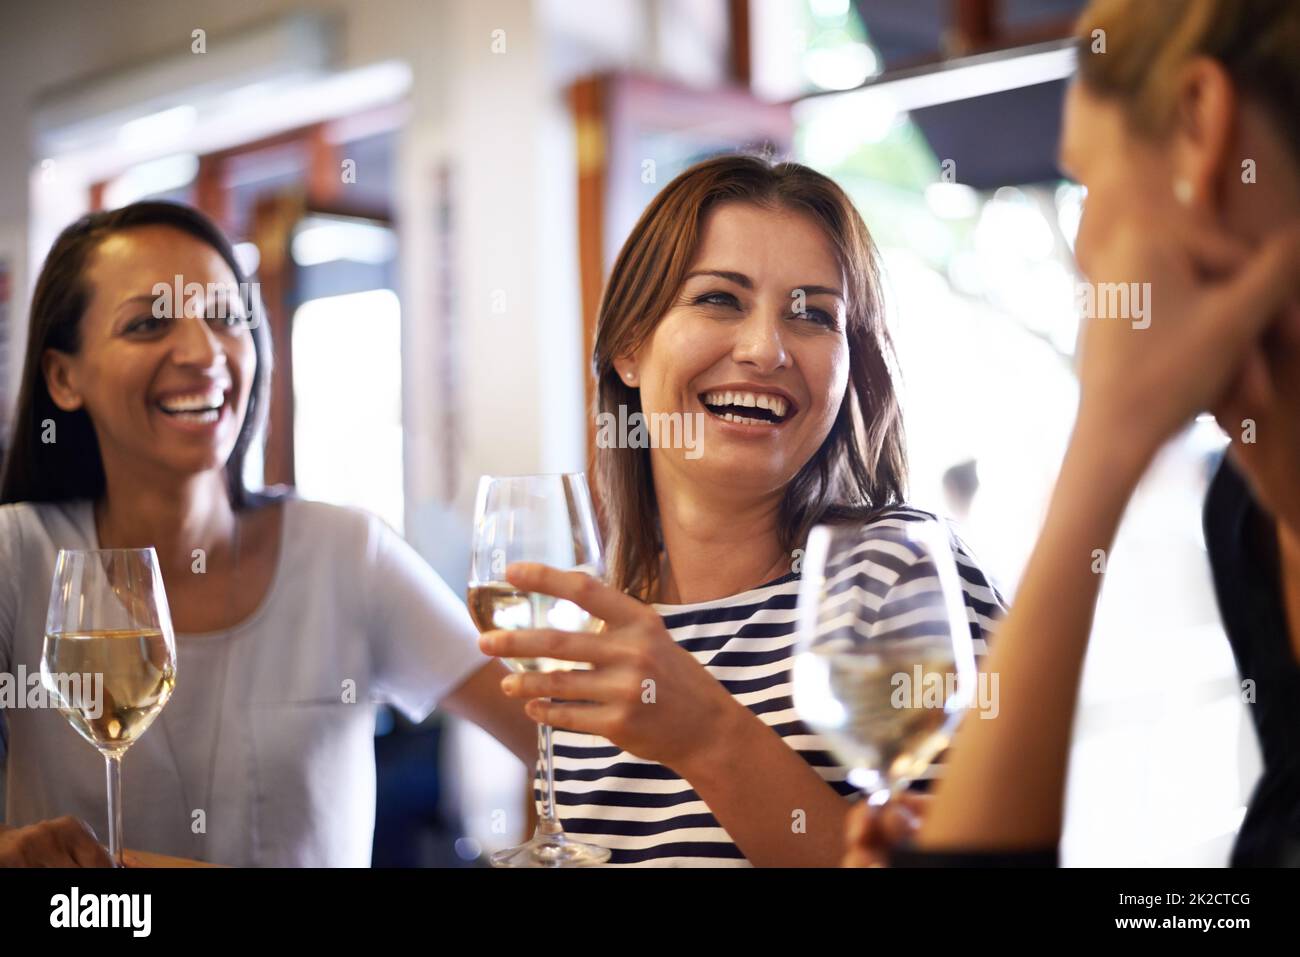 Die Mädchen feiern mit einem Glas Wein. Eine kurze Aufnahme von drei Frauen, die ein Glas Weißwein genießen. Stockfoto